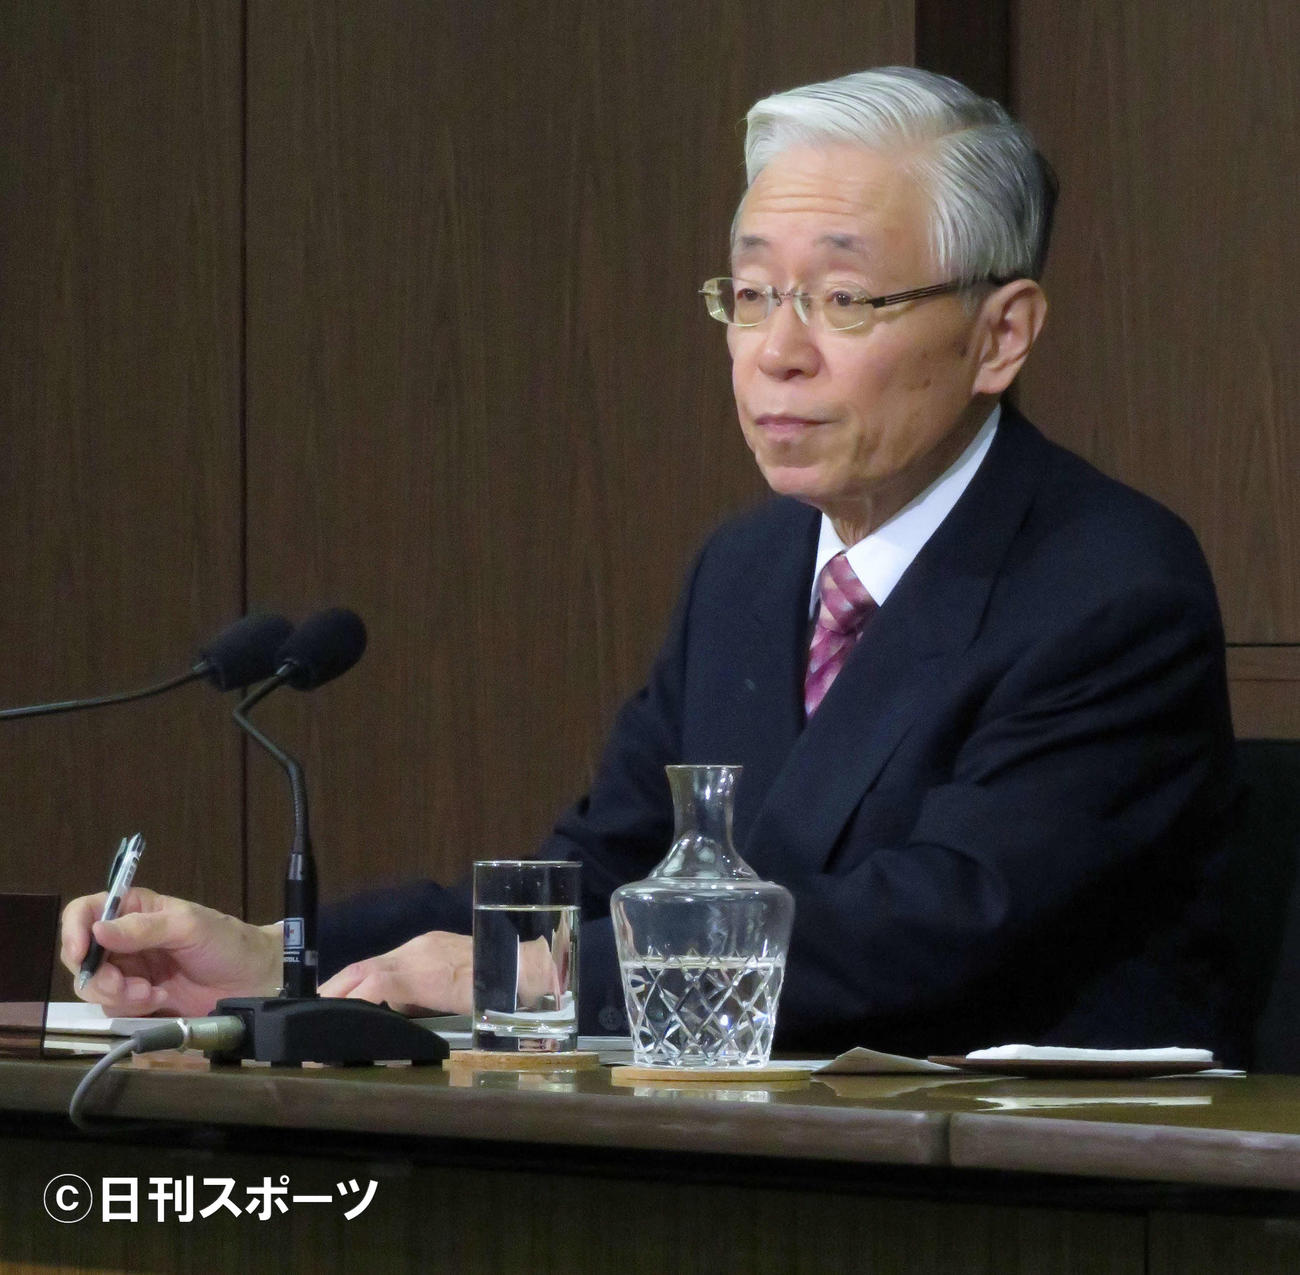 NHKの会長に就任し、会見を行った前田晃伸氏